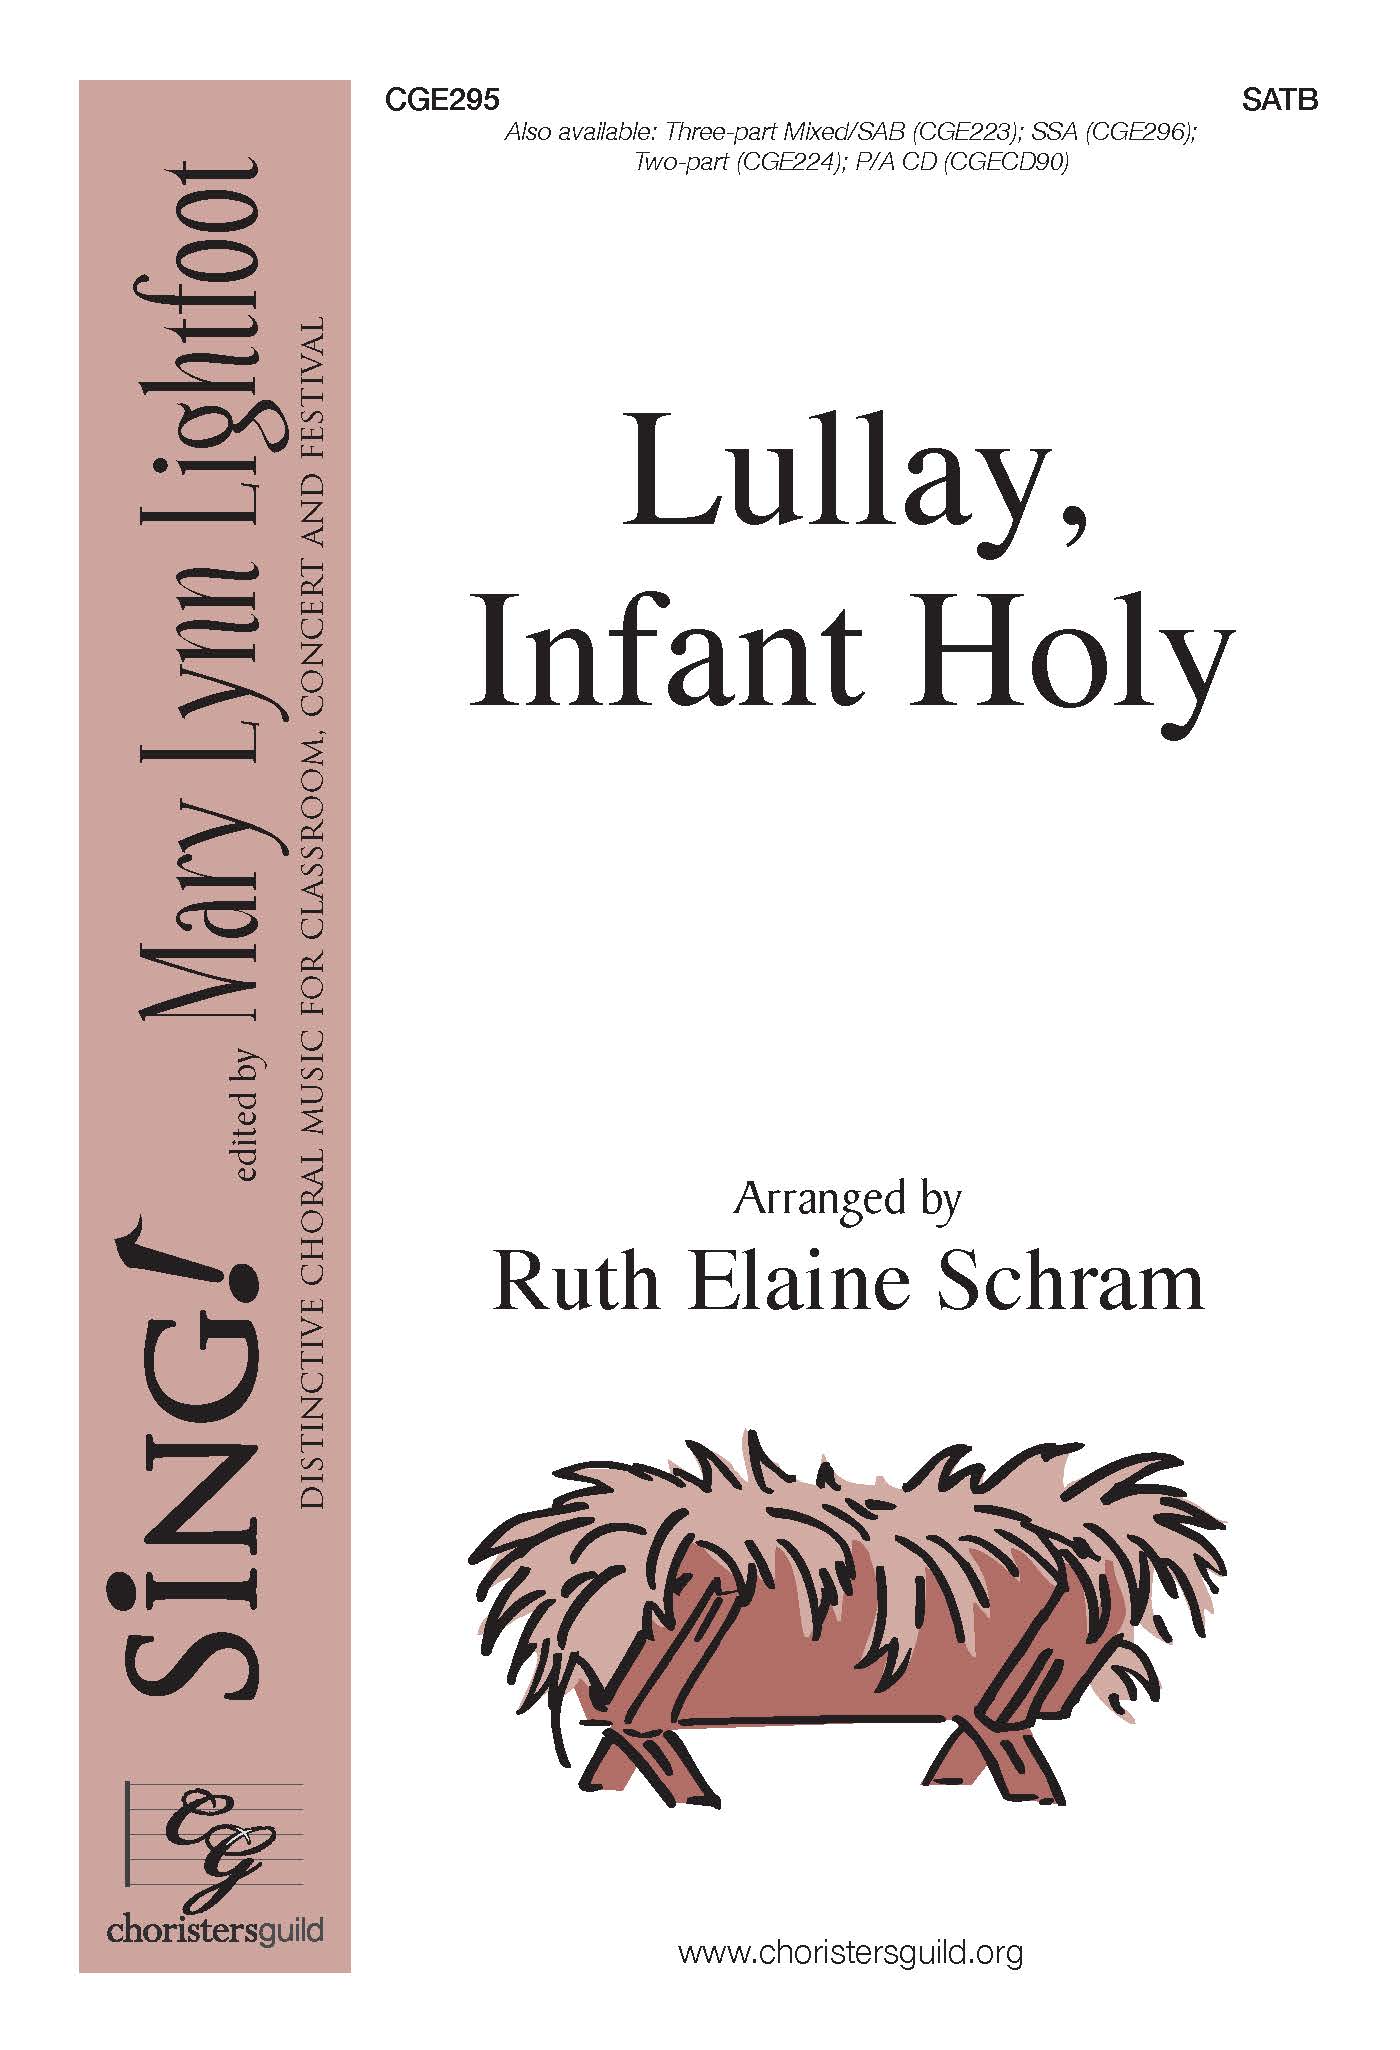 Lullay, Infant Holy - SATB